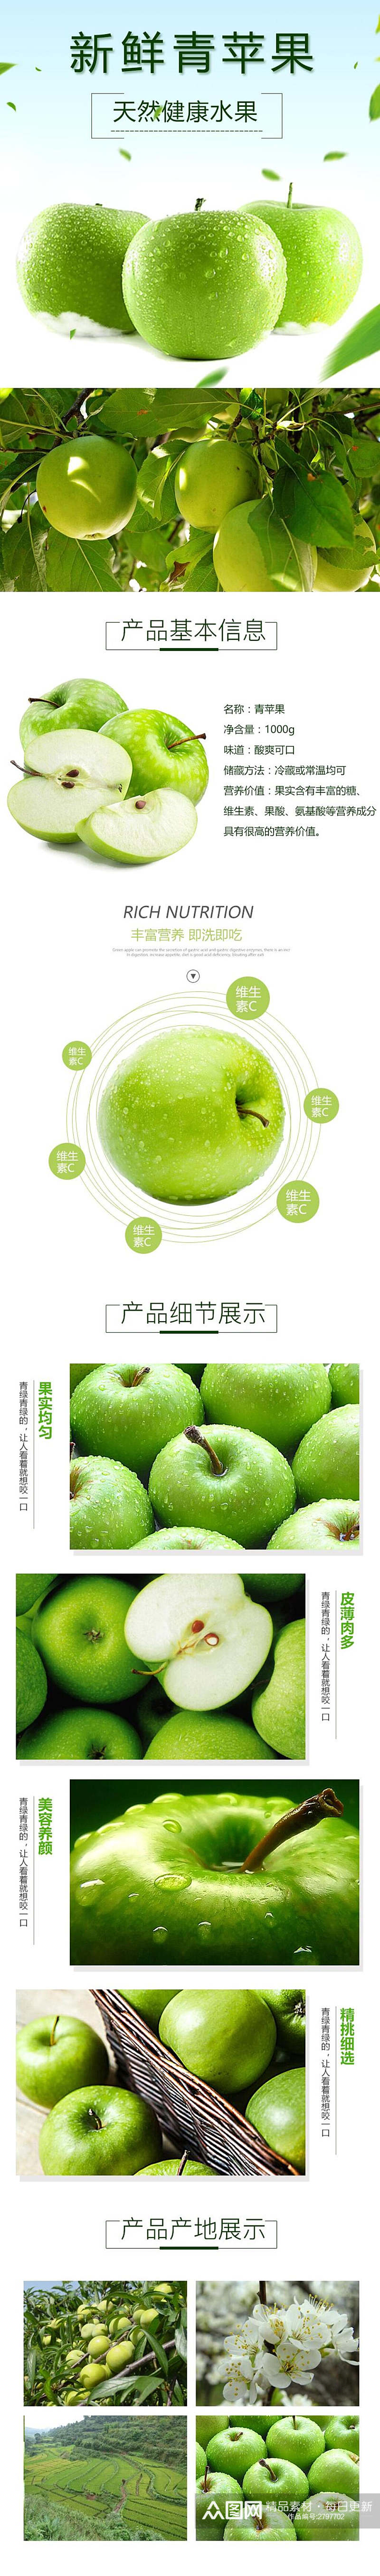 天然健康水果苹果电商食品详情页素材